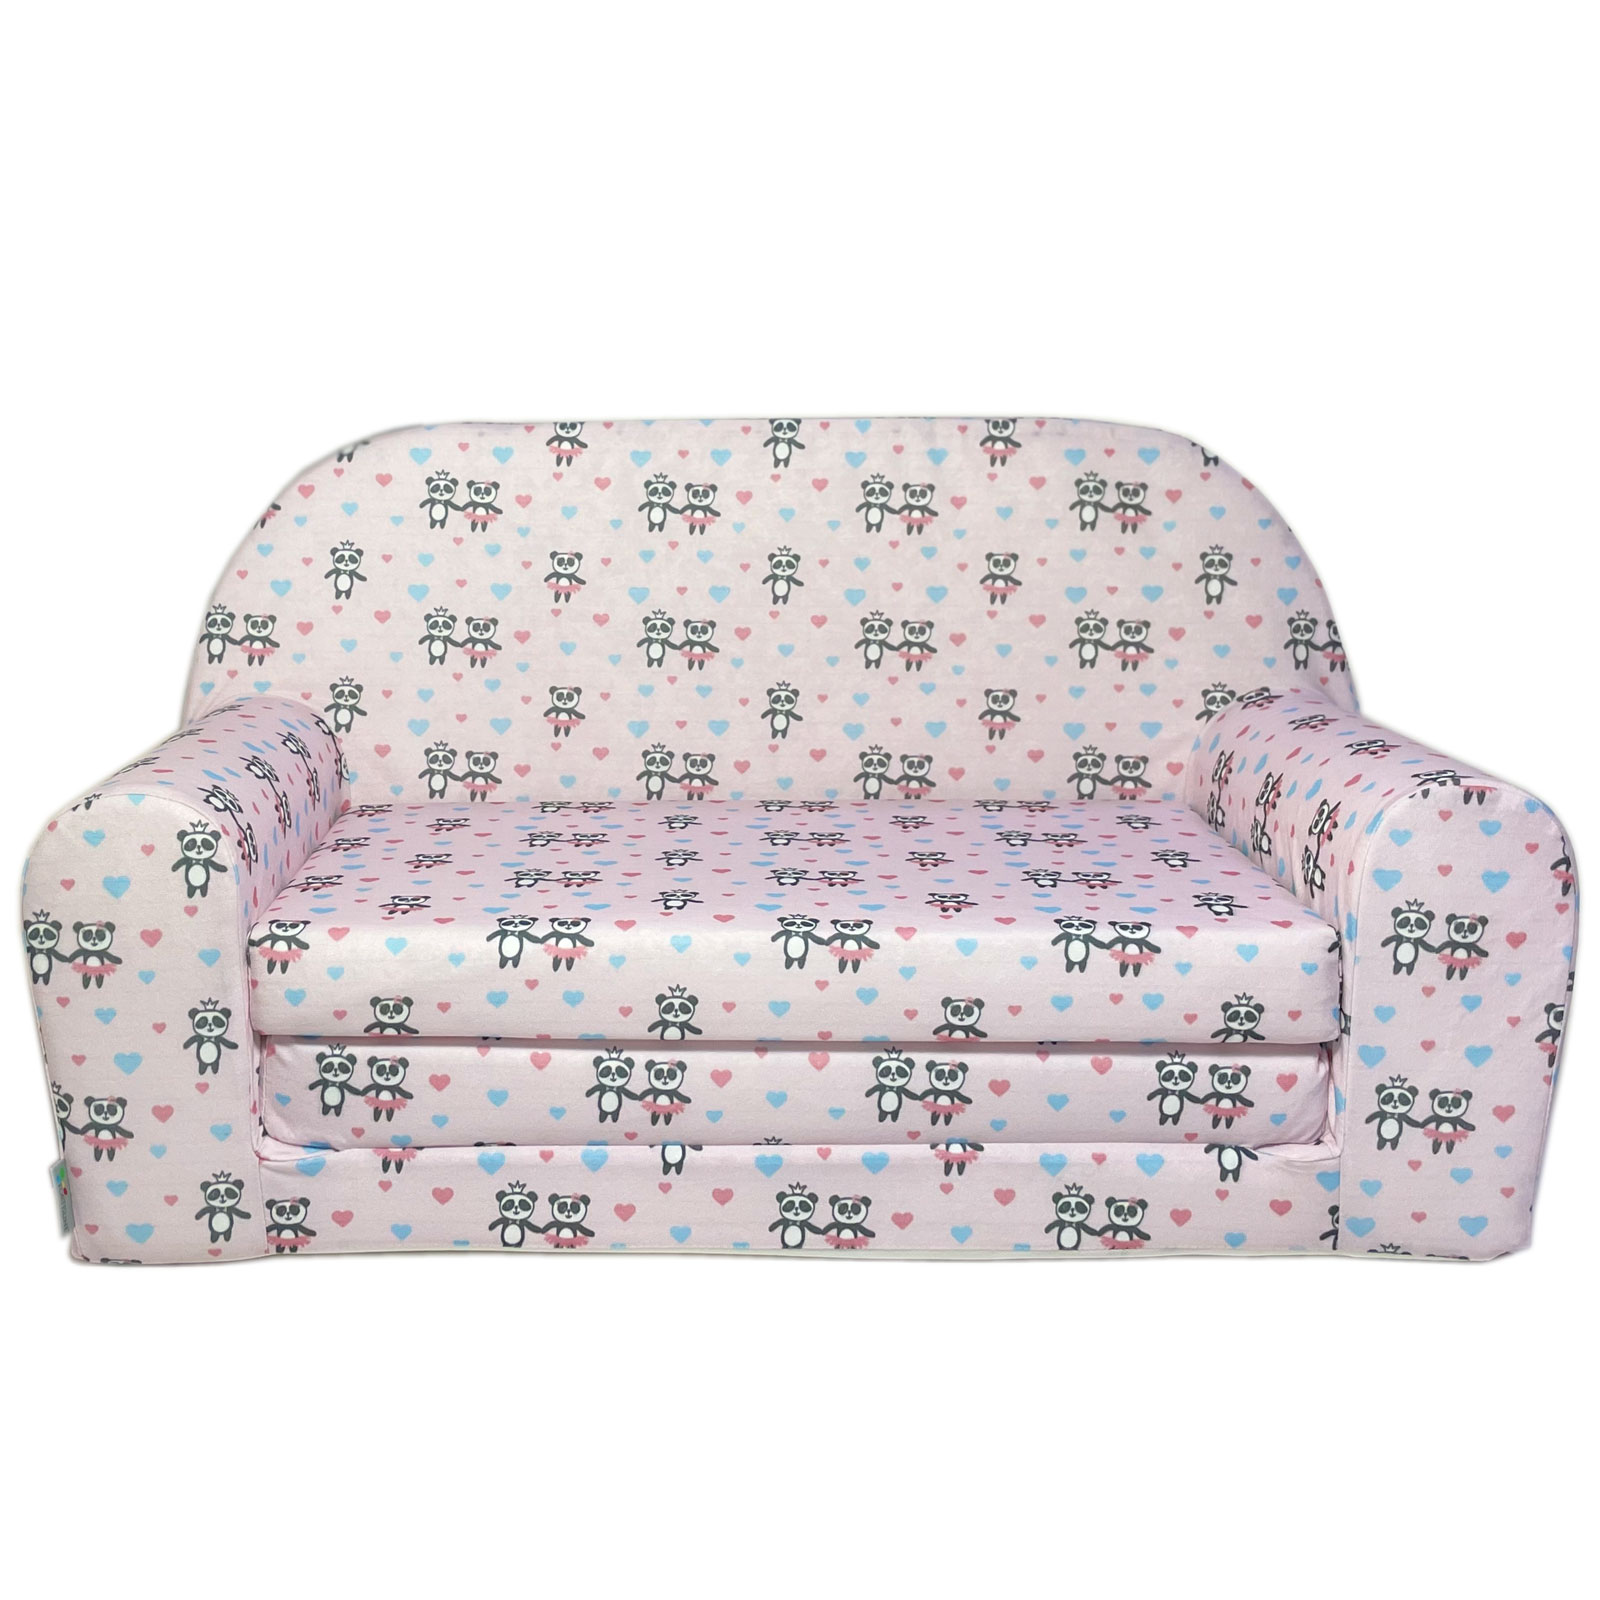 Mini-canapé lit enfant Fan Zone FRfauteuils,poufs,matelas,meubles enfants